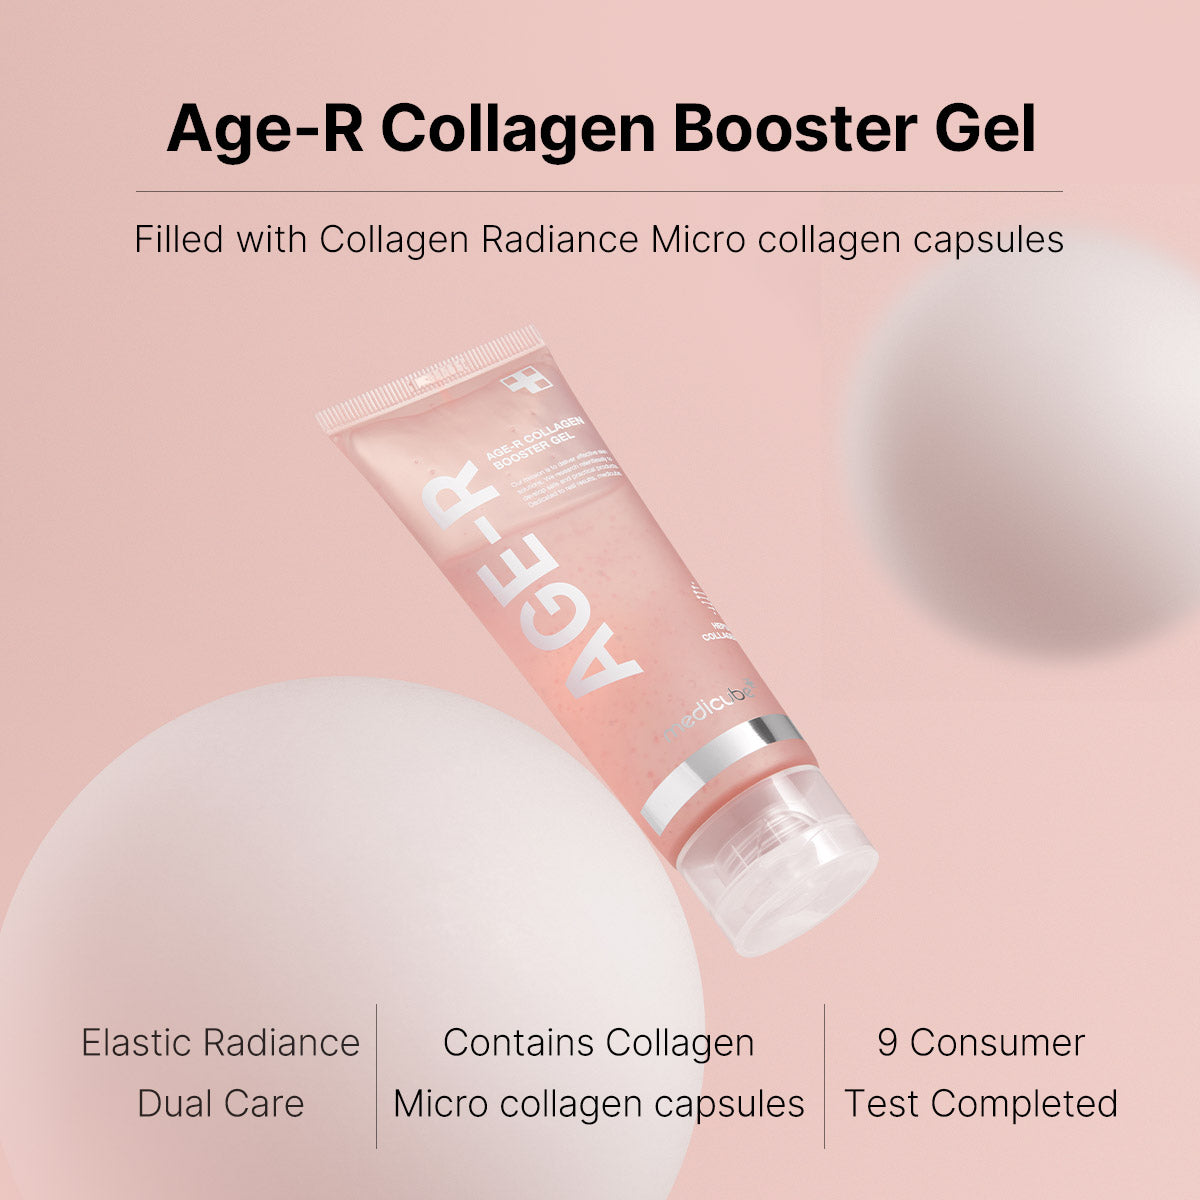 Age-R Collagen Booster Gel